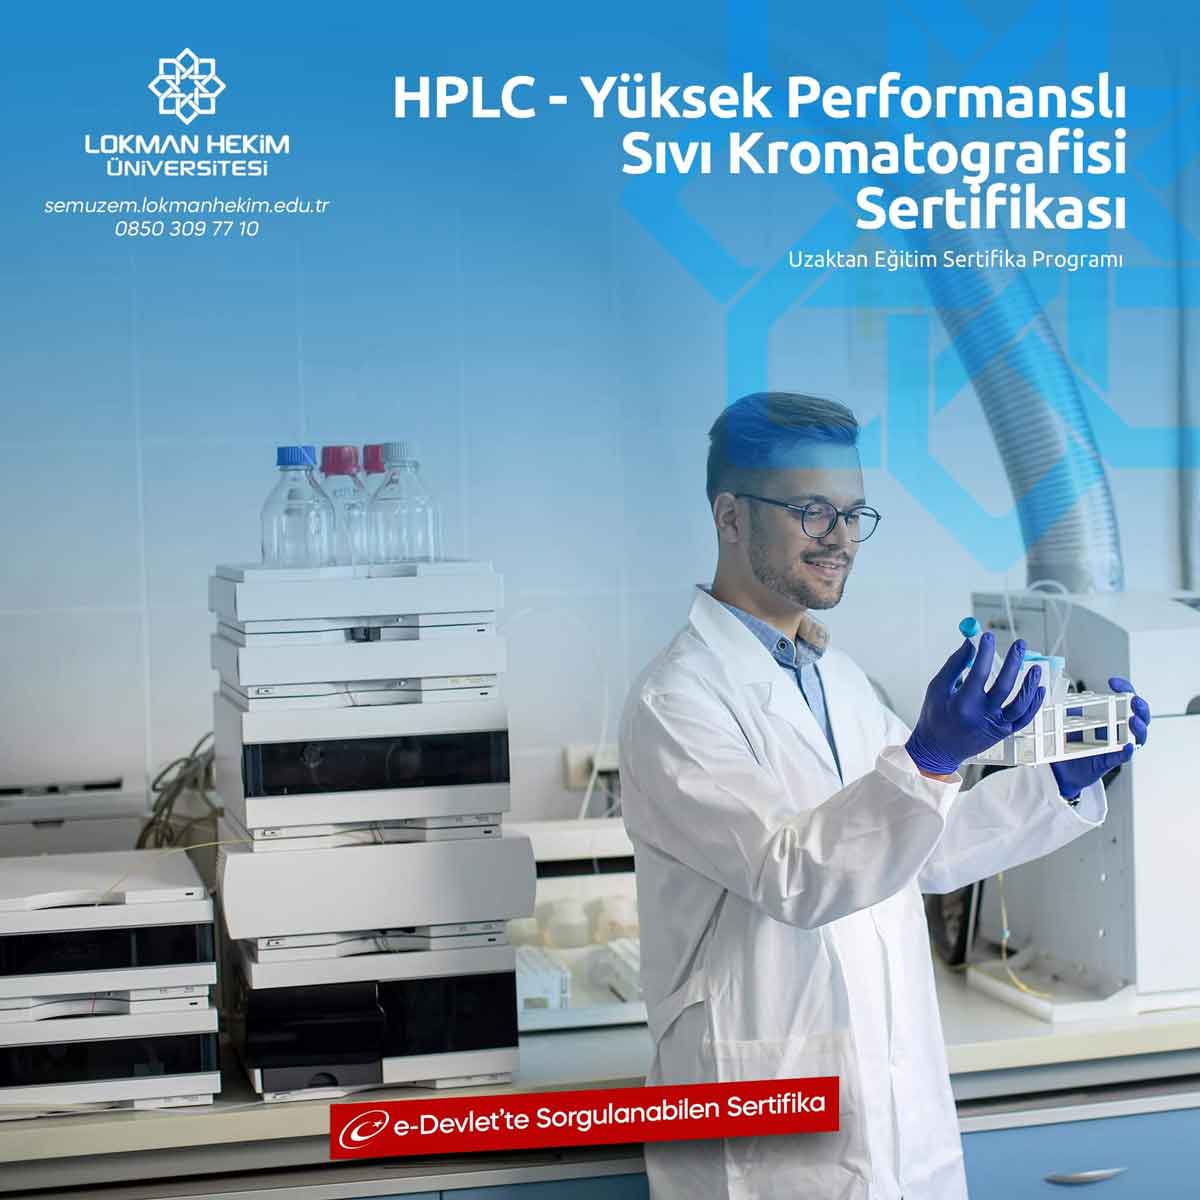 HPLC - Yüksek Performanslı Sıvı Kromatografisi Sertifikası Nedir, Nasıl Alınır?